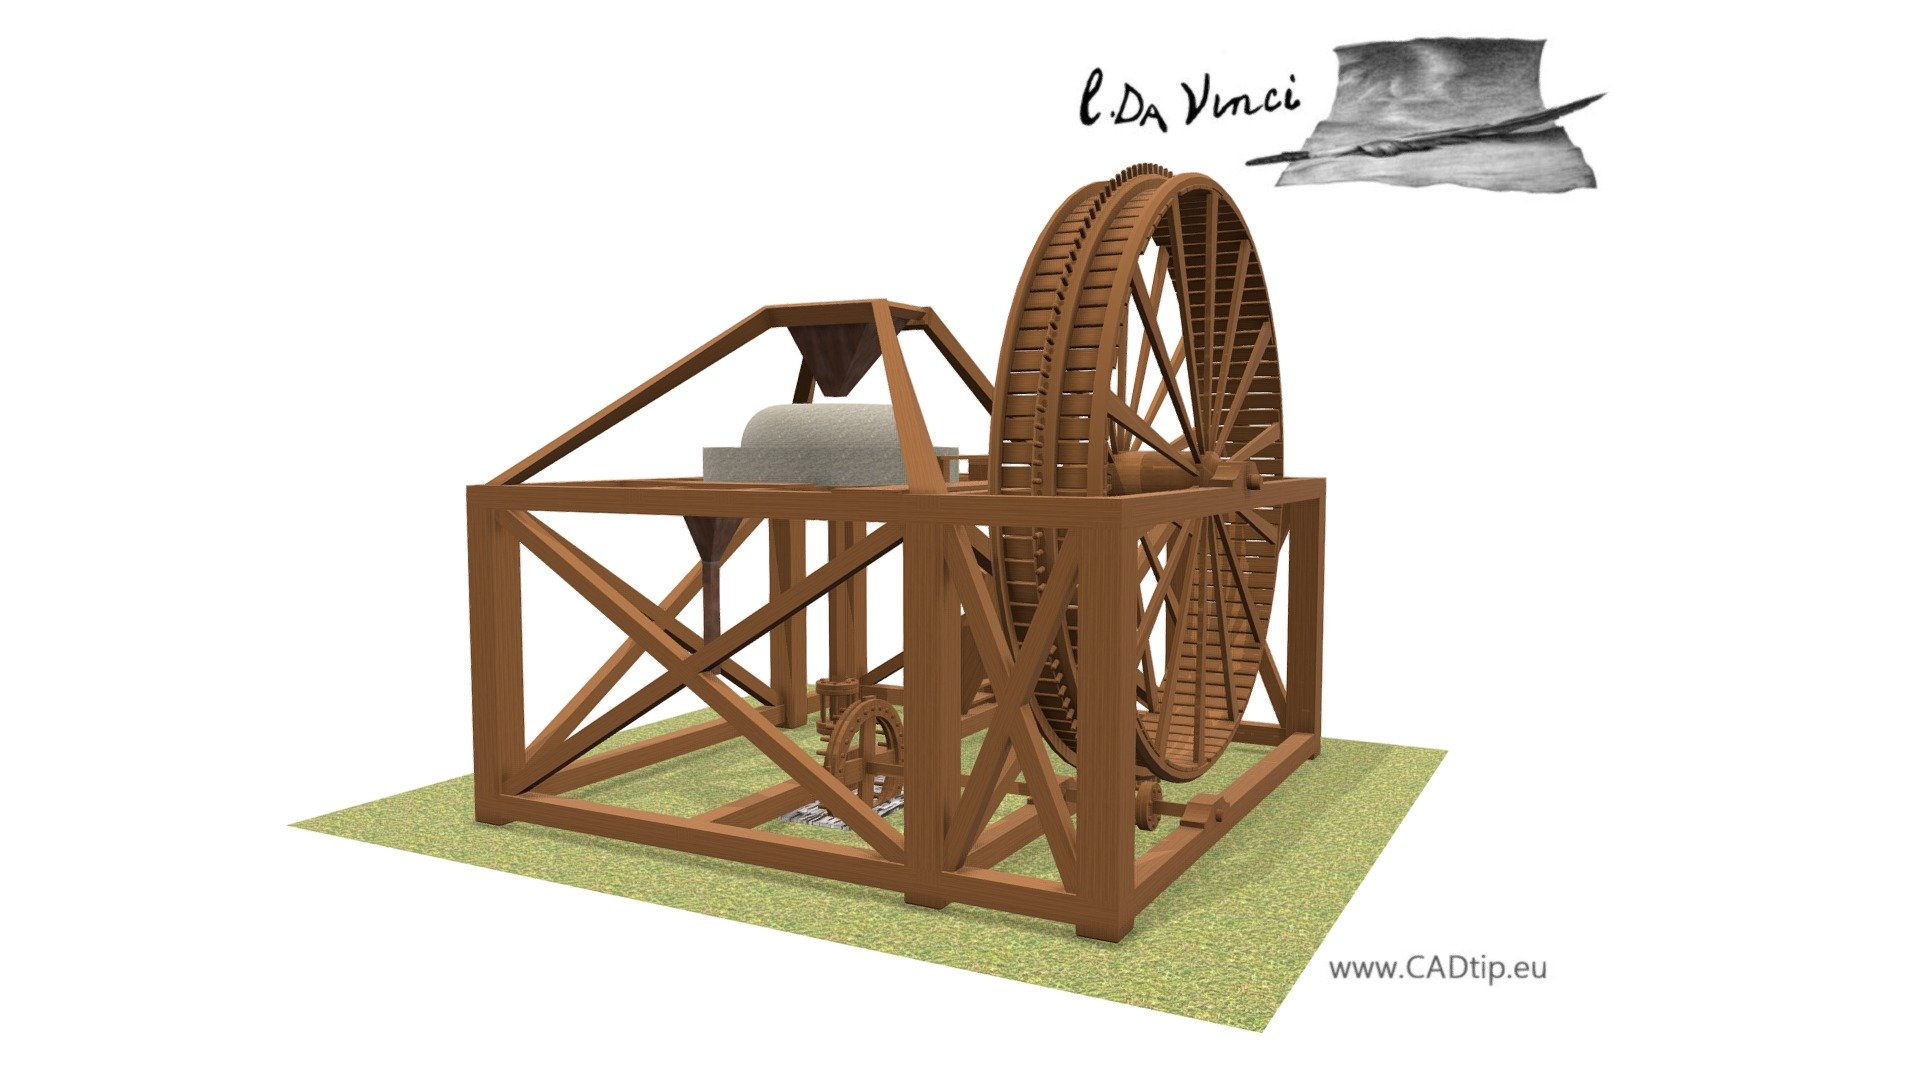 Tread mill, Leonardo da Vinci; Codex Atlanticus 0045r  

More: http://leonardo.cadtip.eu/2017/05/06/mlyn-2/ - Tread mill - 3D model by Mar.K 3d model